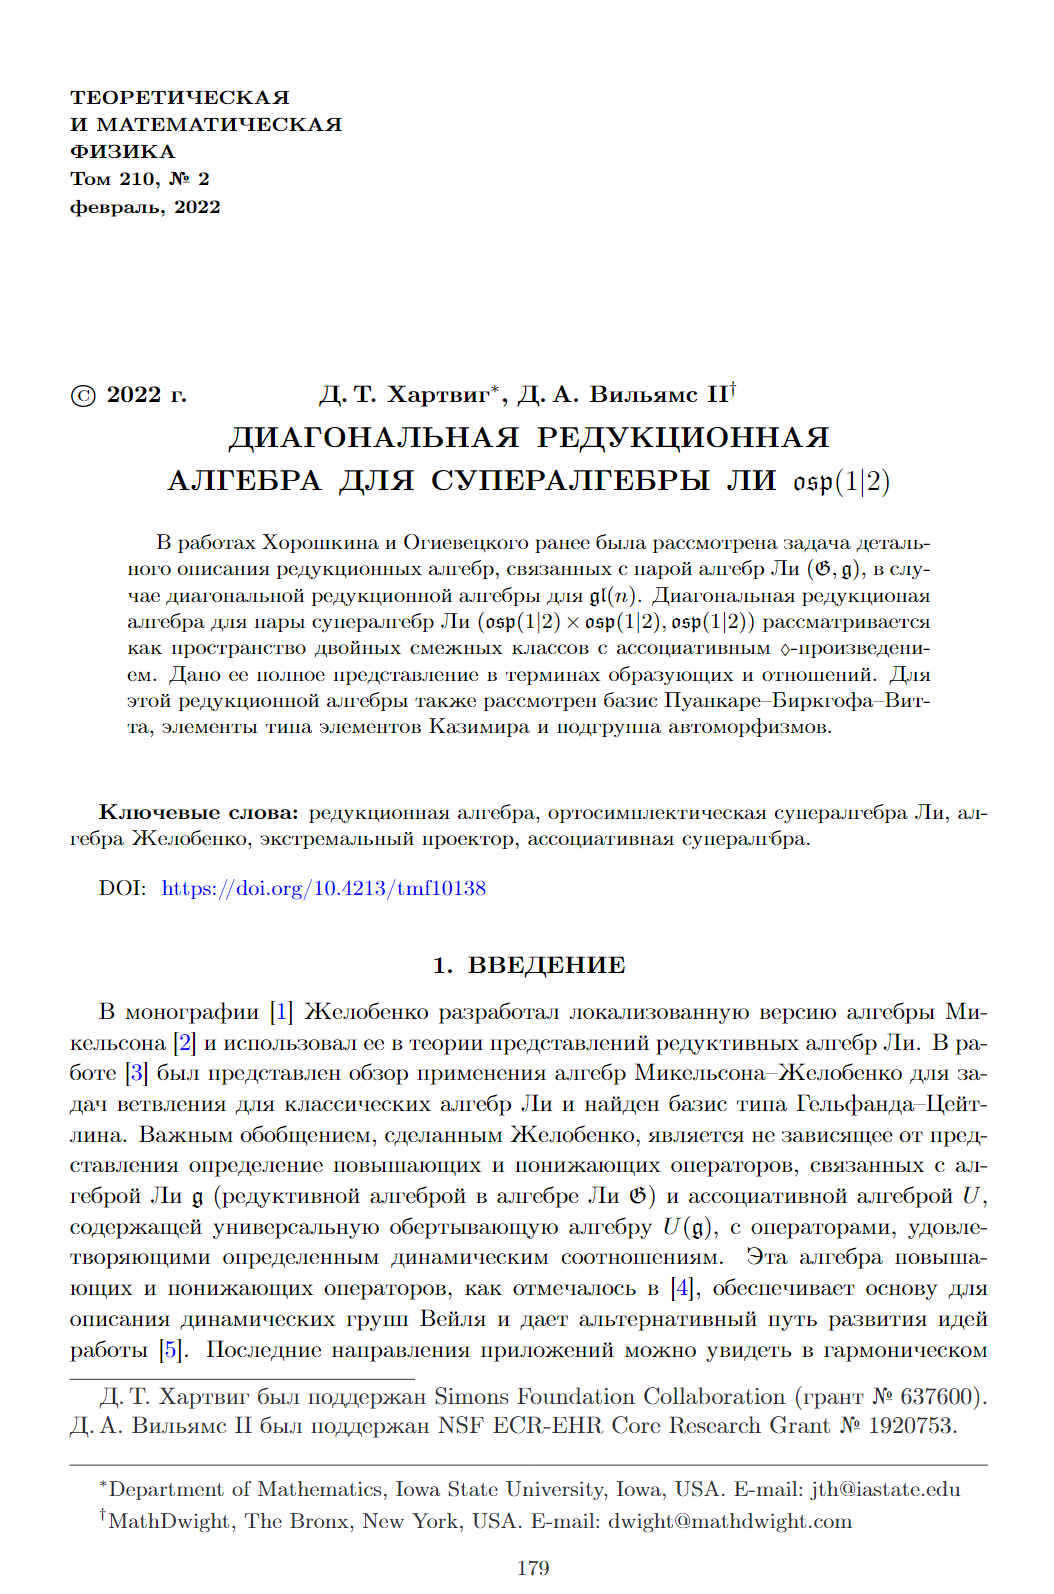 Publication 2022 #1a (#1): Диагональная редукционная алгебра для супералгебры Ли osp(1|2)